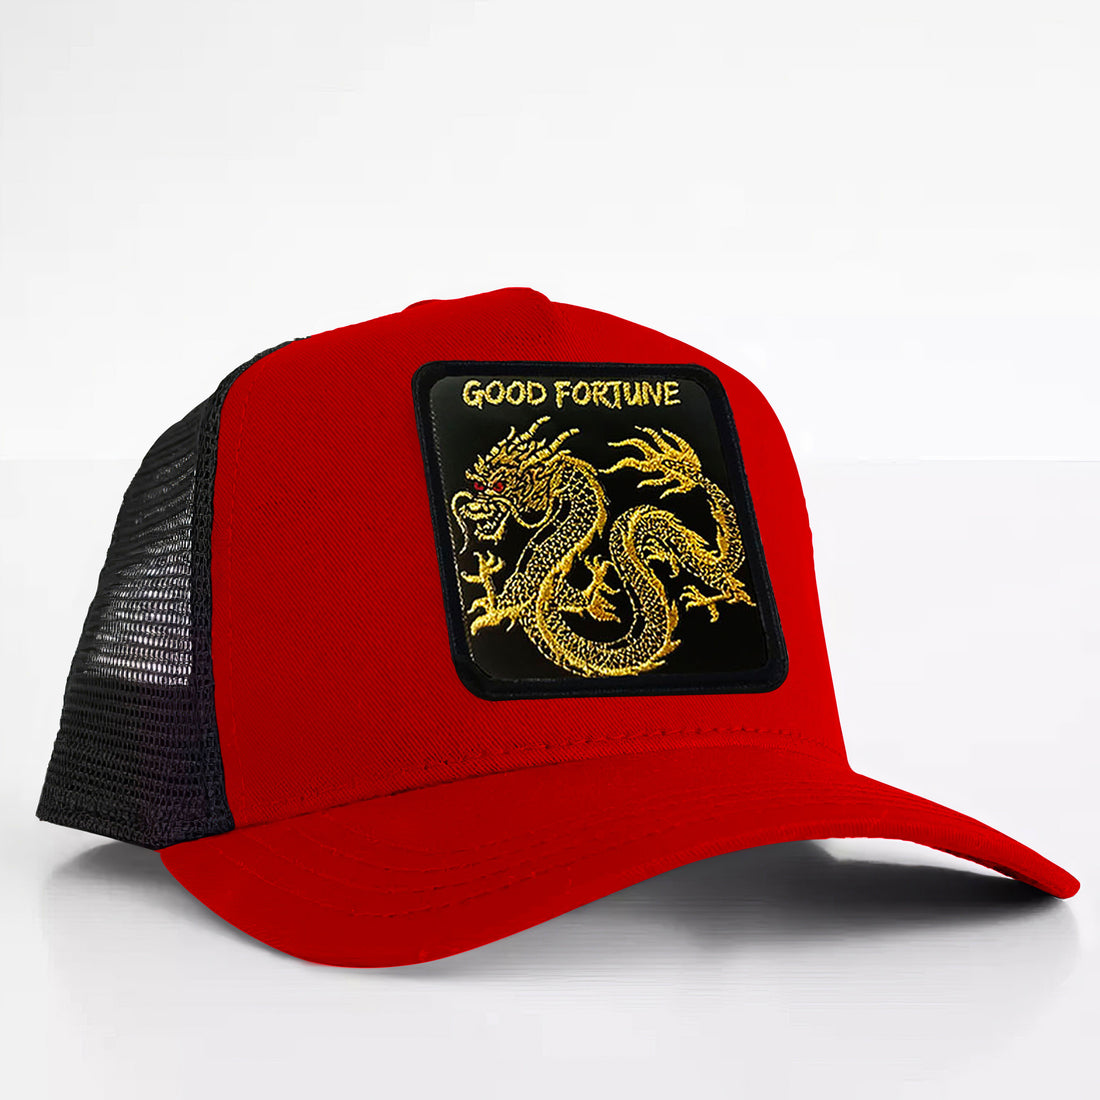 ORIENTAL DRAGON - "GOOD FORTUNE" TRUCKER HAT